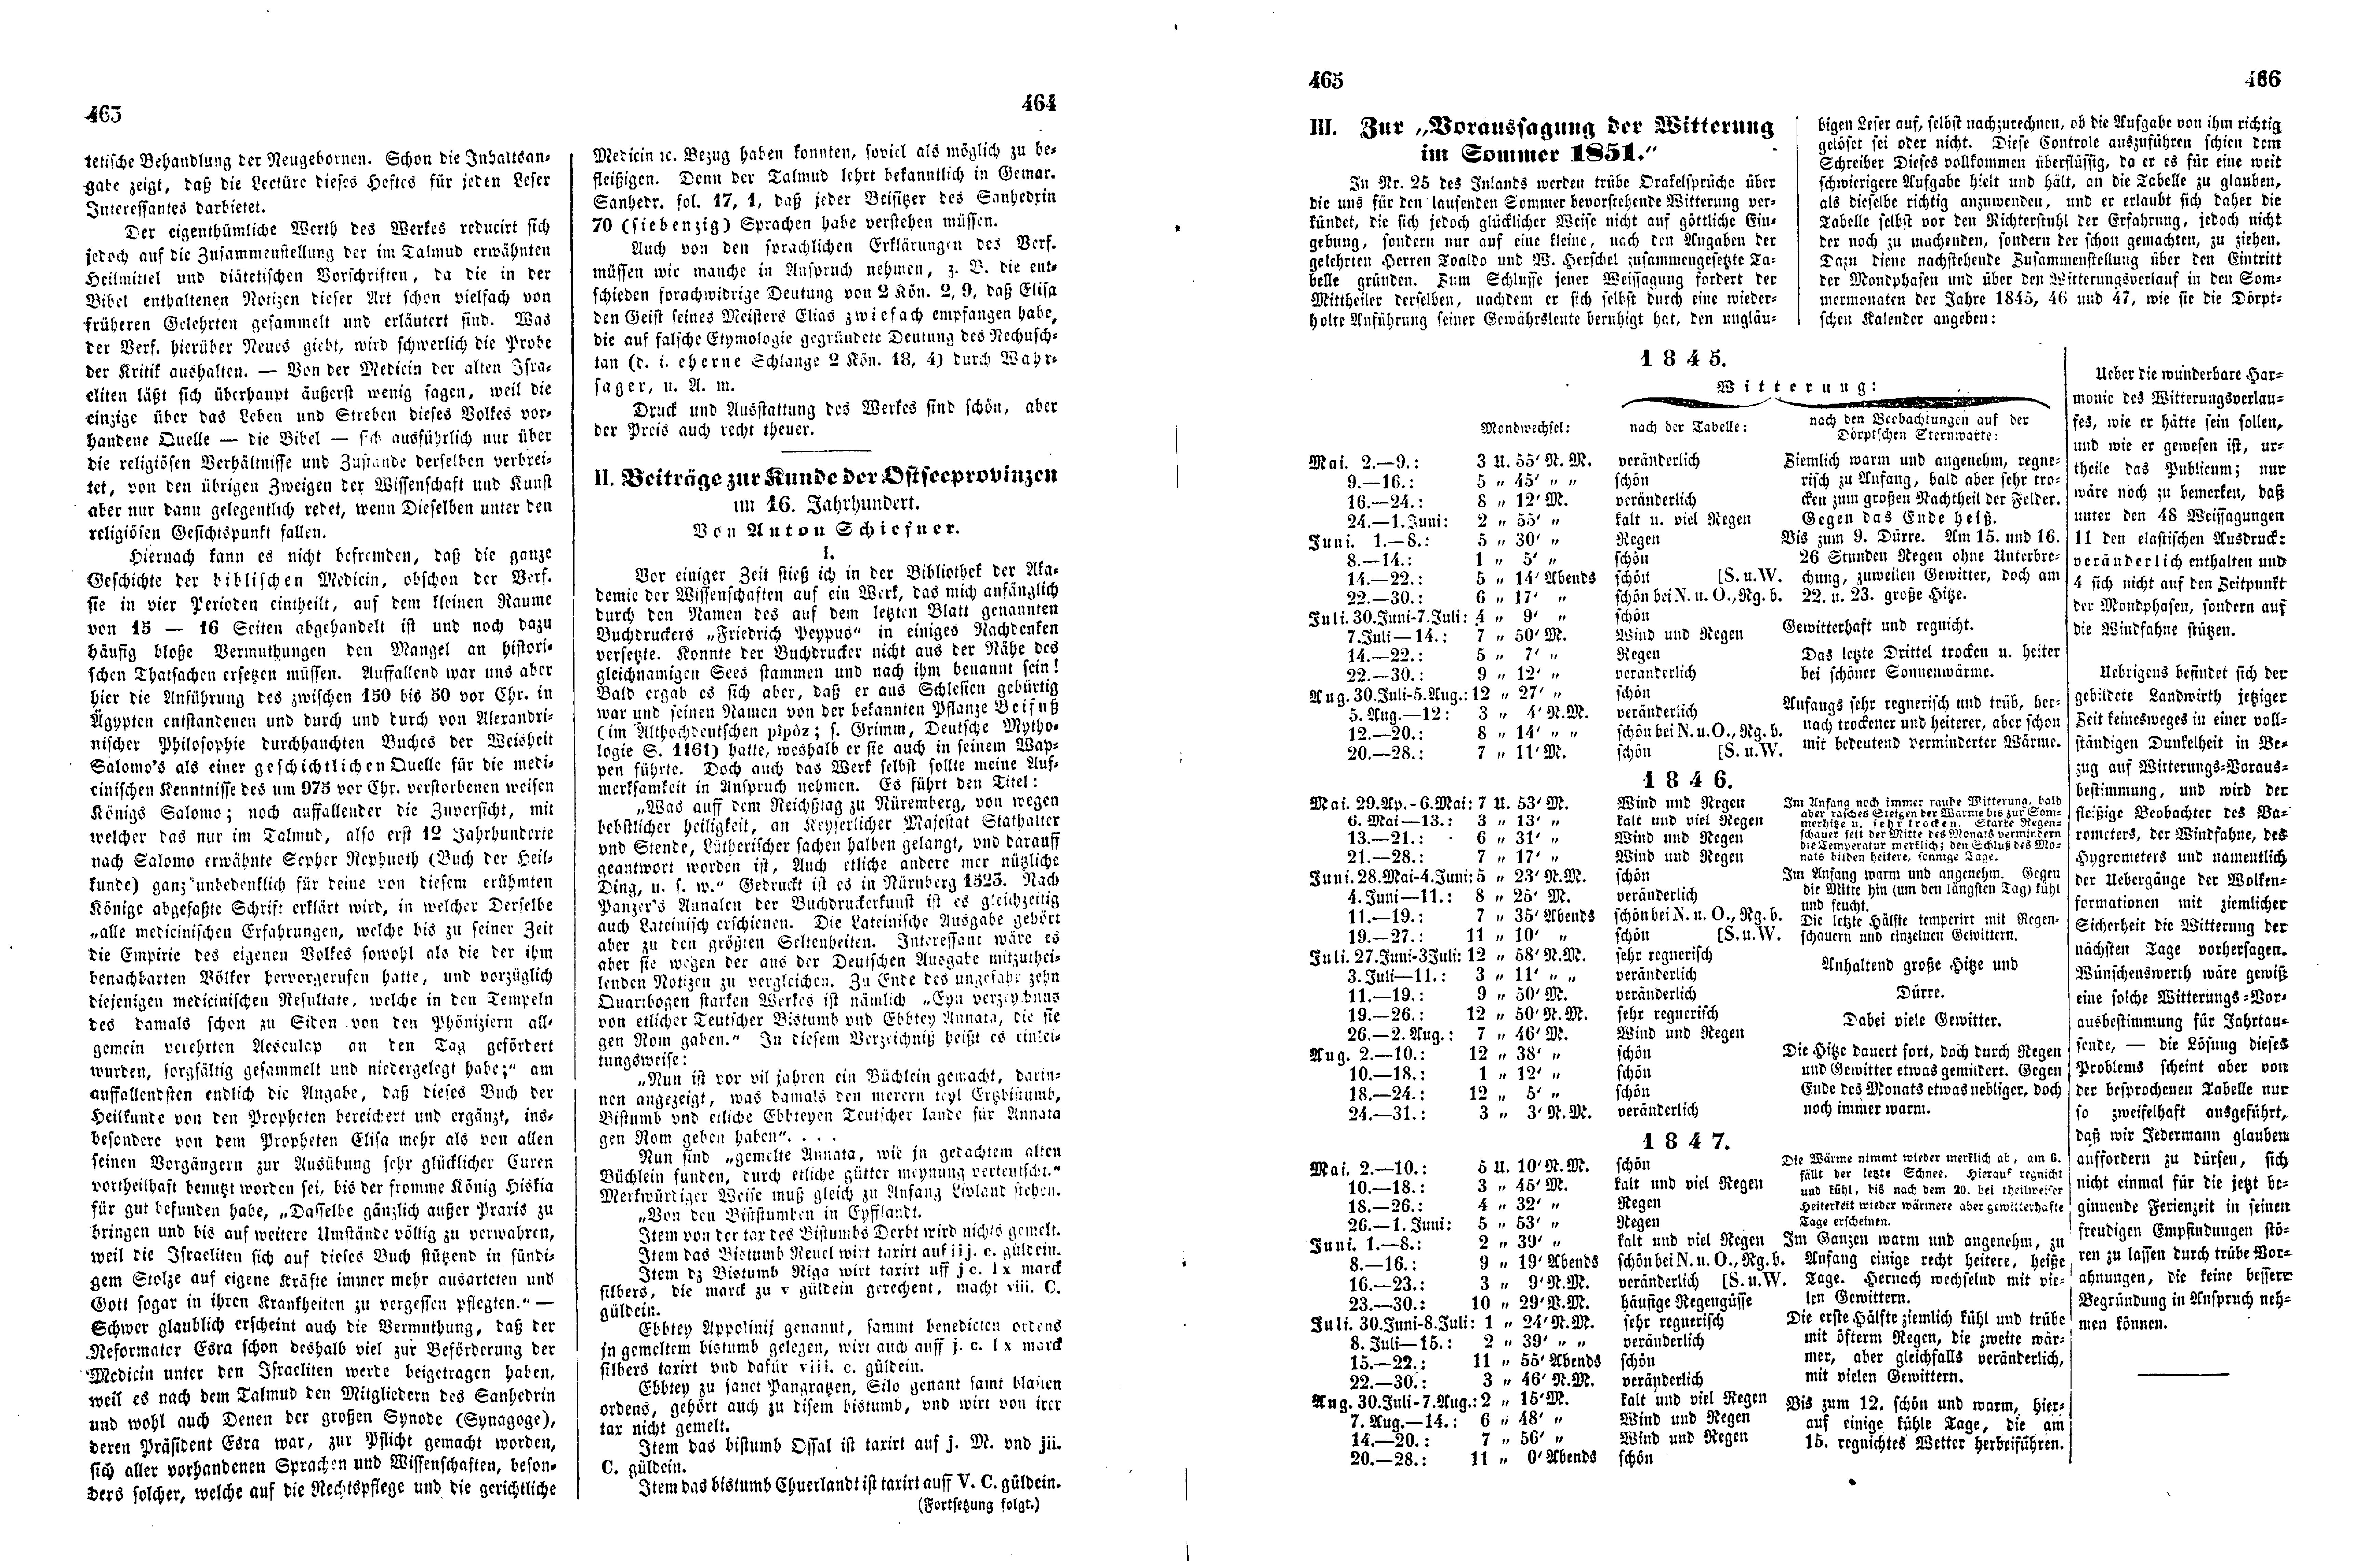 Das Inland [16] (1851) | 120. (463-466) Haupttext